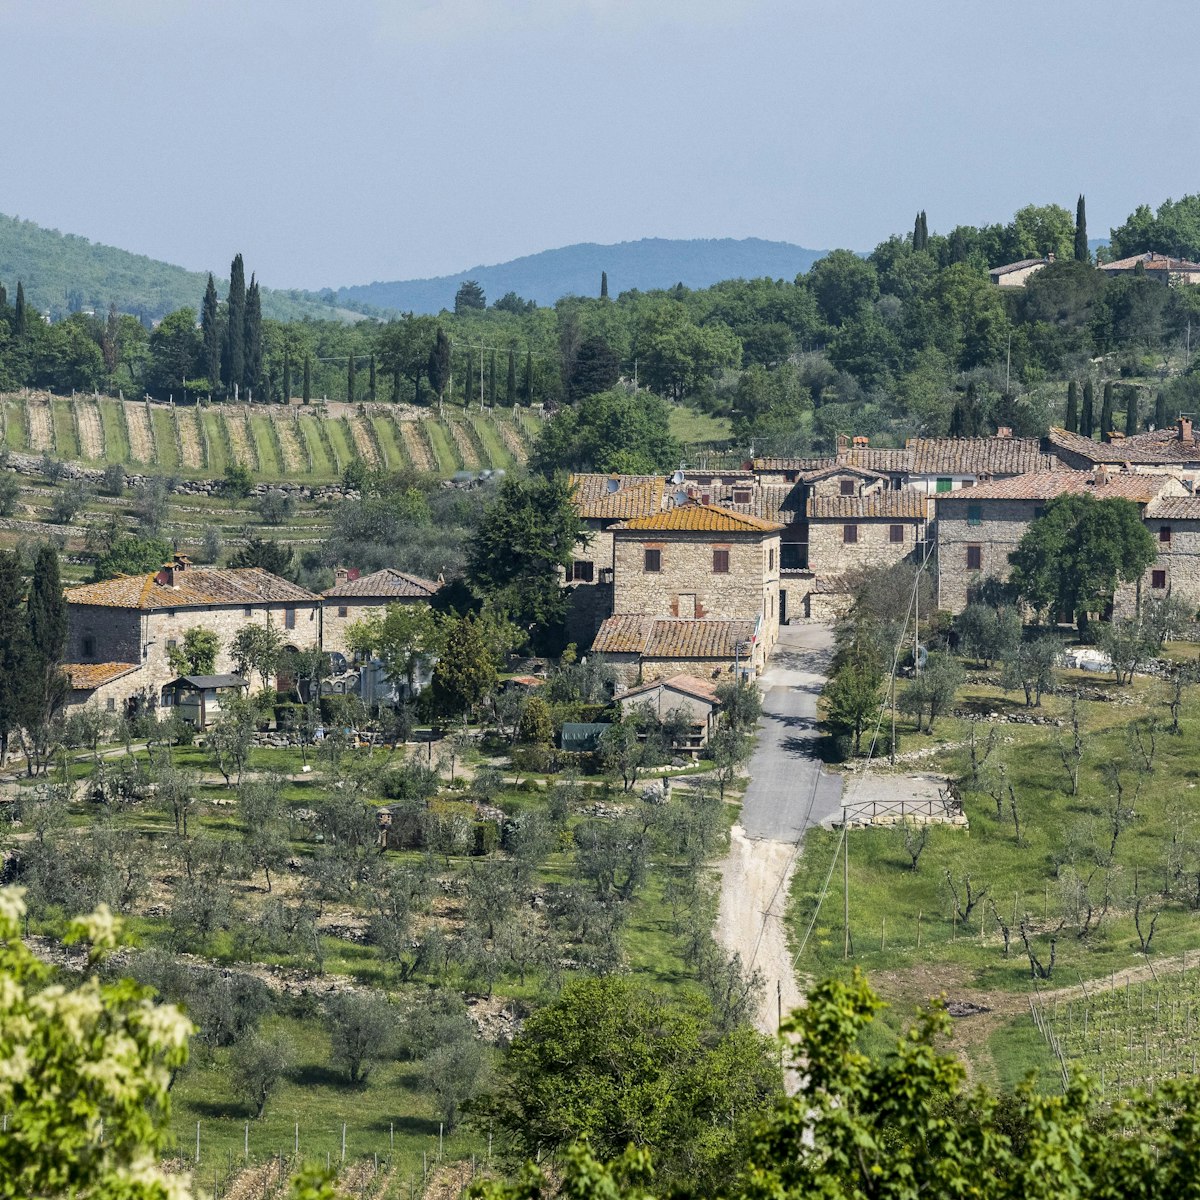 Winery Castello di Ama, Chianti region, Tuscany, Italy.